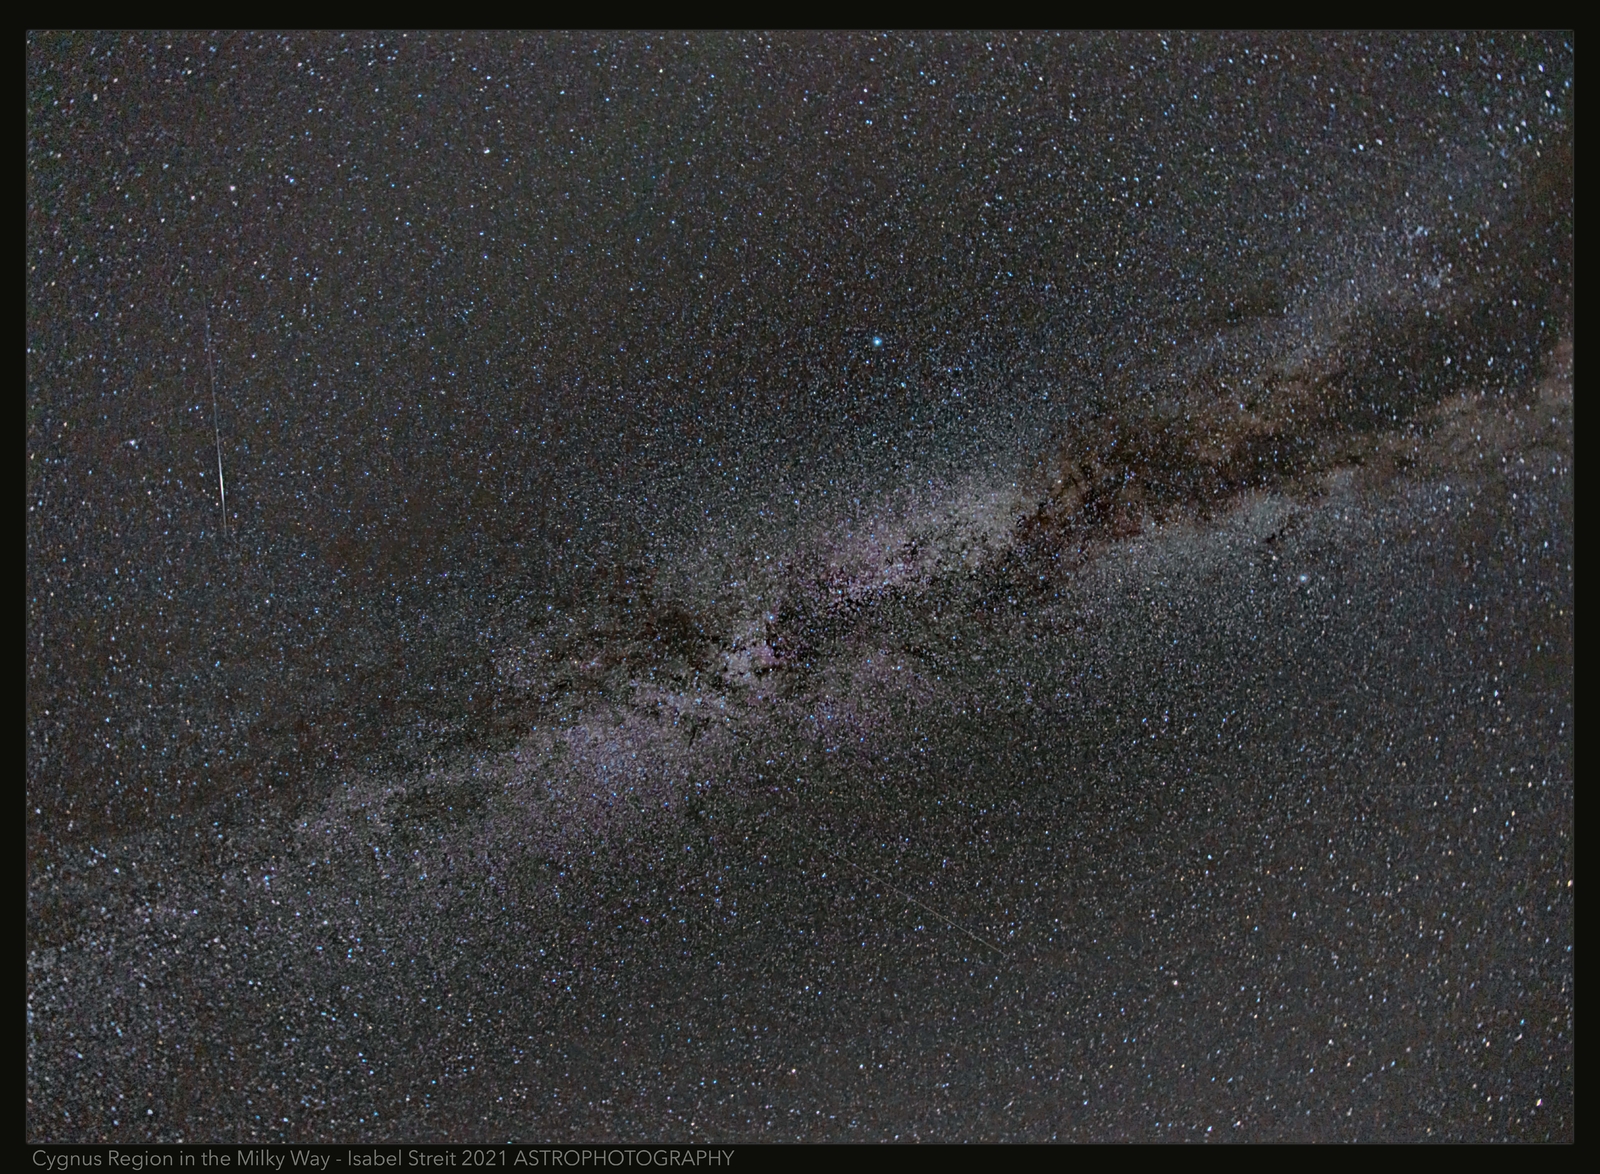 Cygnus Region in Milky Way with Meteor 10 July 2021